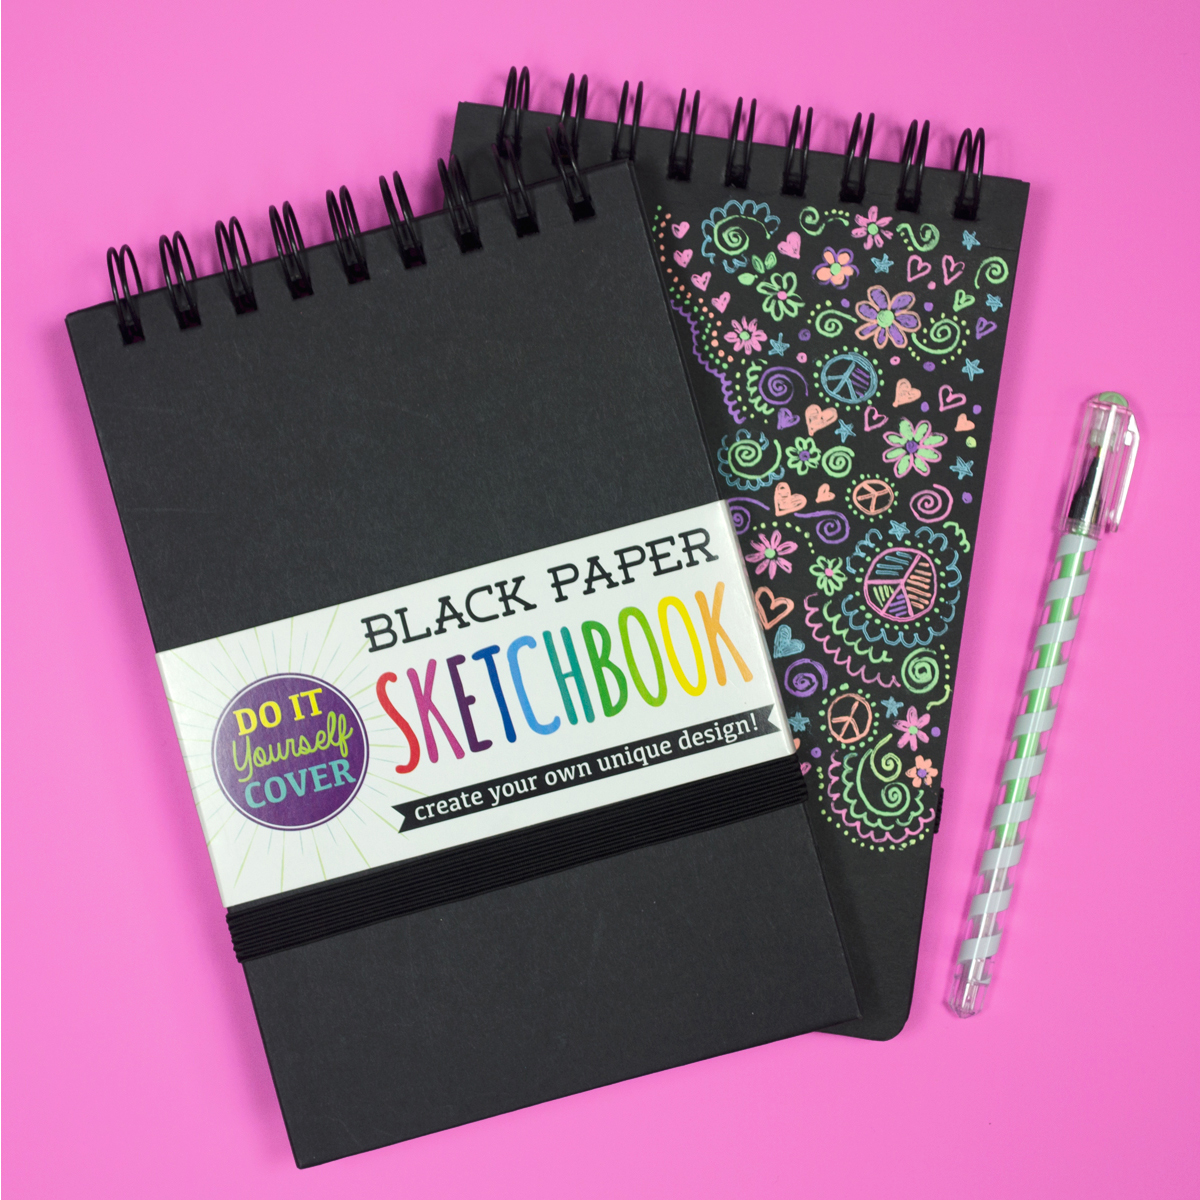 Black DIY Cover Sketchbook by OOLY